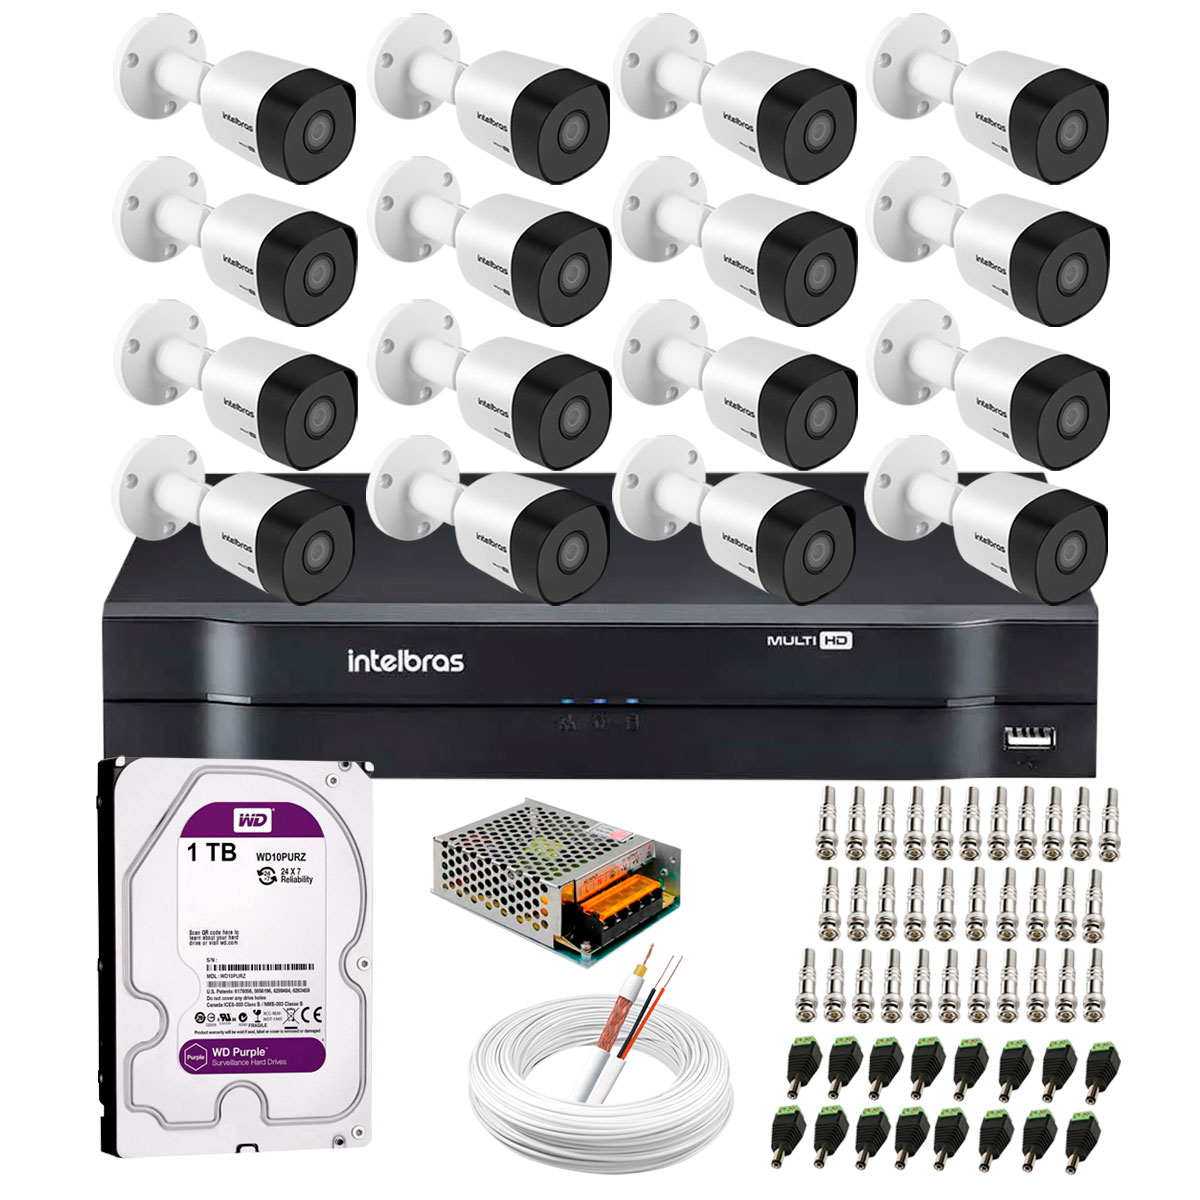 kit-16-cameras-vhd-3130-b-g6-dvr-intelbras-hd-1tb-para-armazenamento-app-gratis-de-monitoramento-cameras-hd-720p-30m-infravermelho-de-visao-noturna-intelbras-fonte-cabos-e-acessorios